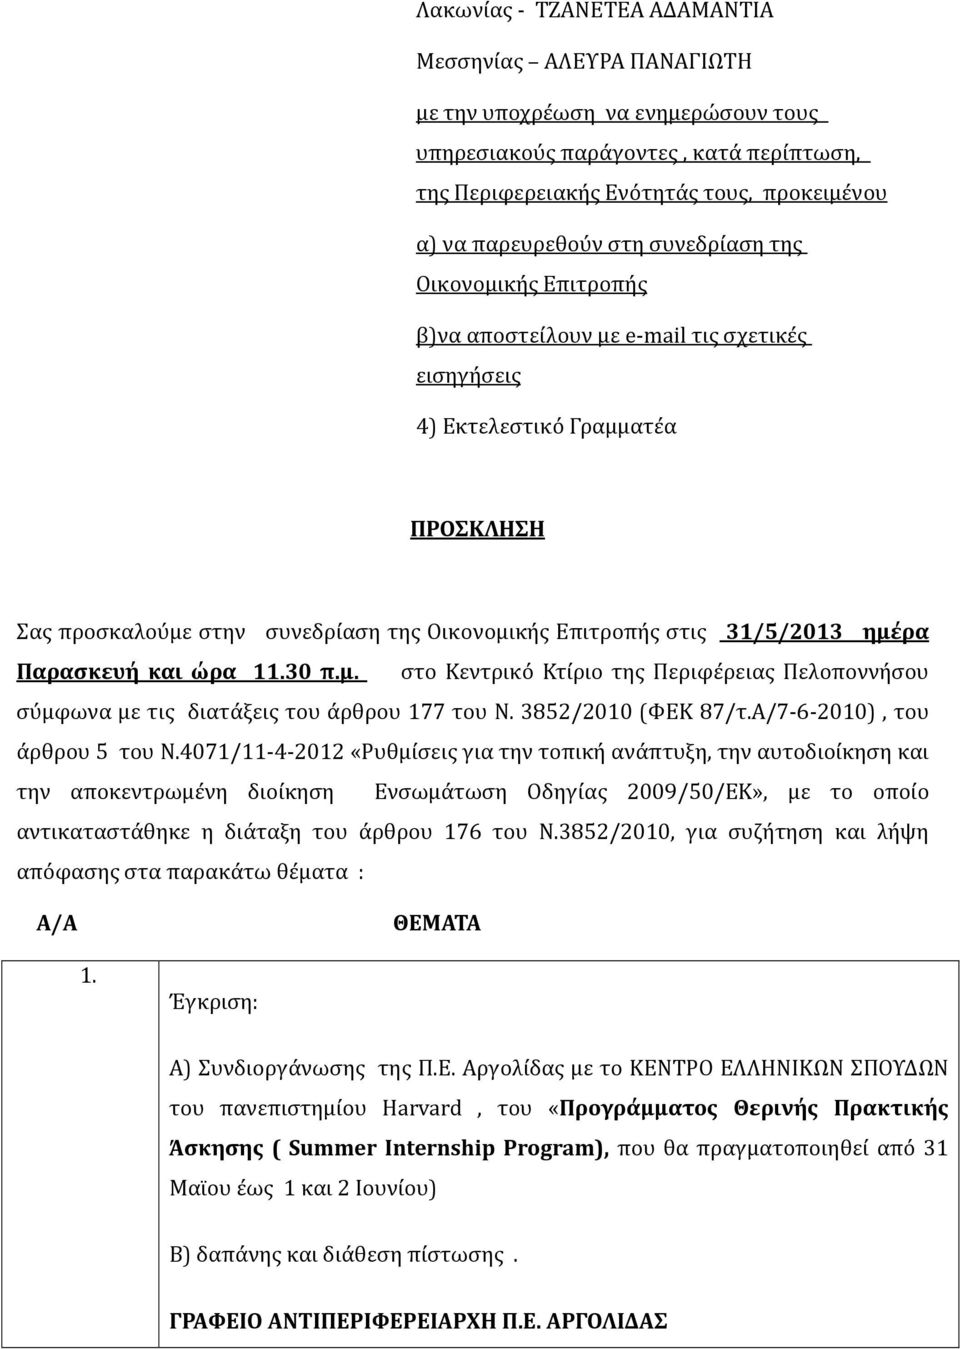 ημέρα Παρασκευή και ώρα 11.30 π.μ. στο Κεντρικό Κτίριο της Περιφέρειας Πελοποννήσου σύμφωνα με τις διατάξεις του άρθρου 177 του Ν. 3852/2010 (ΦΕΚ 87/τ.Α/7-6-2010), του άρθρου 5 του Ν.